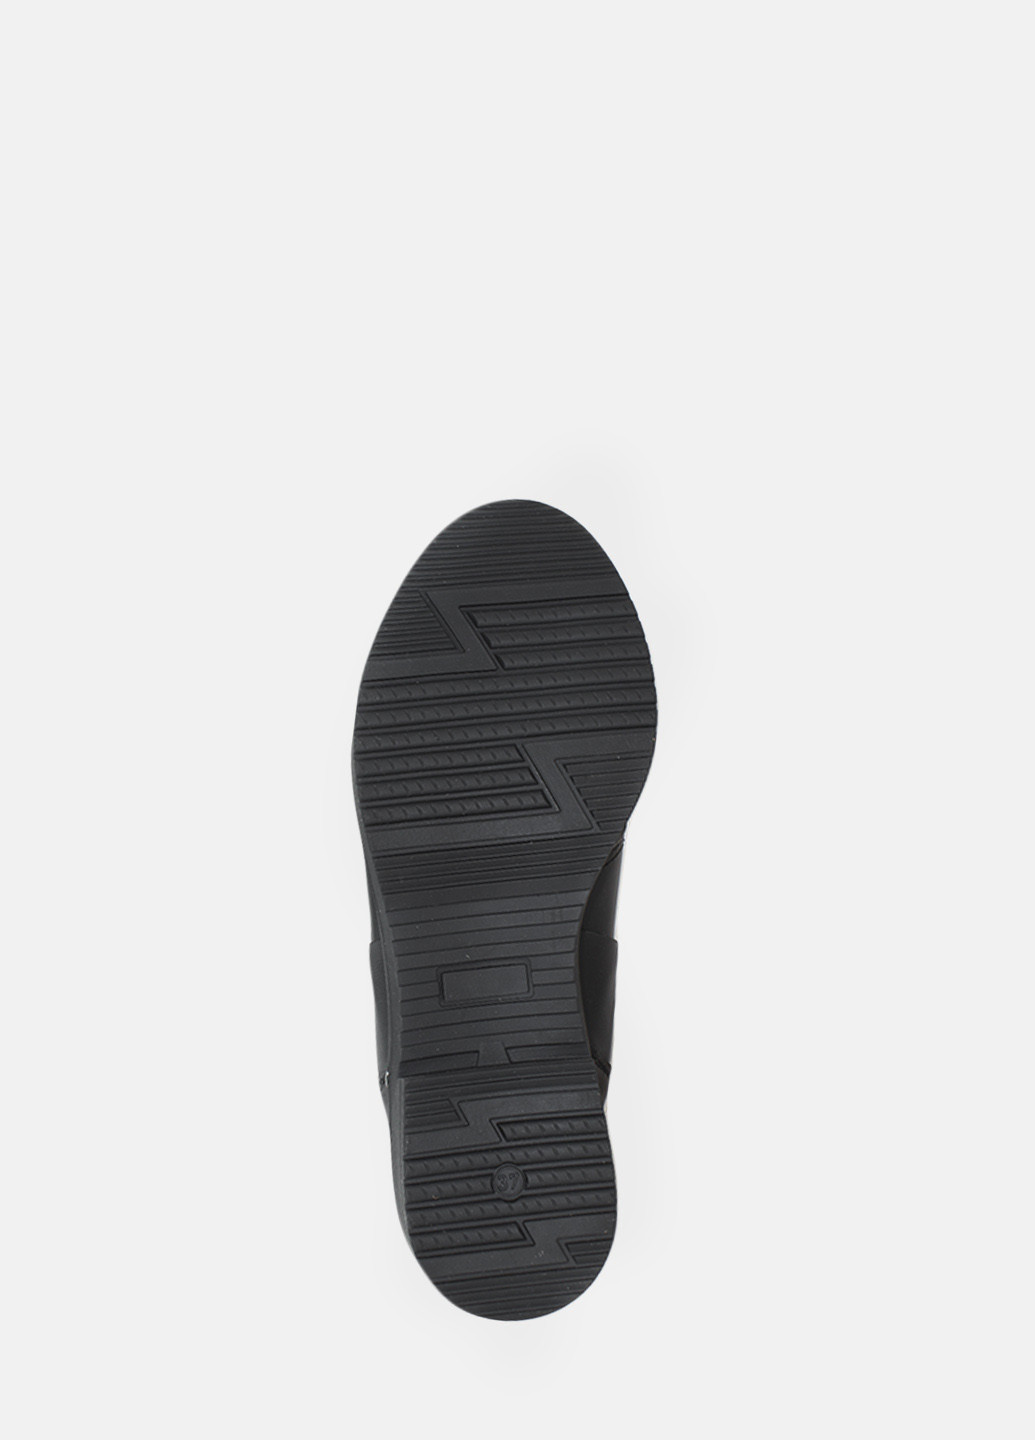 Зимние ботинки rp713 черный Passati